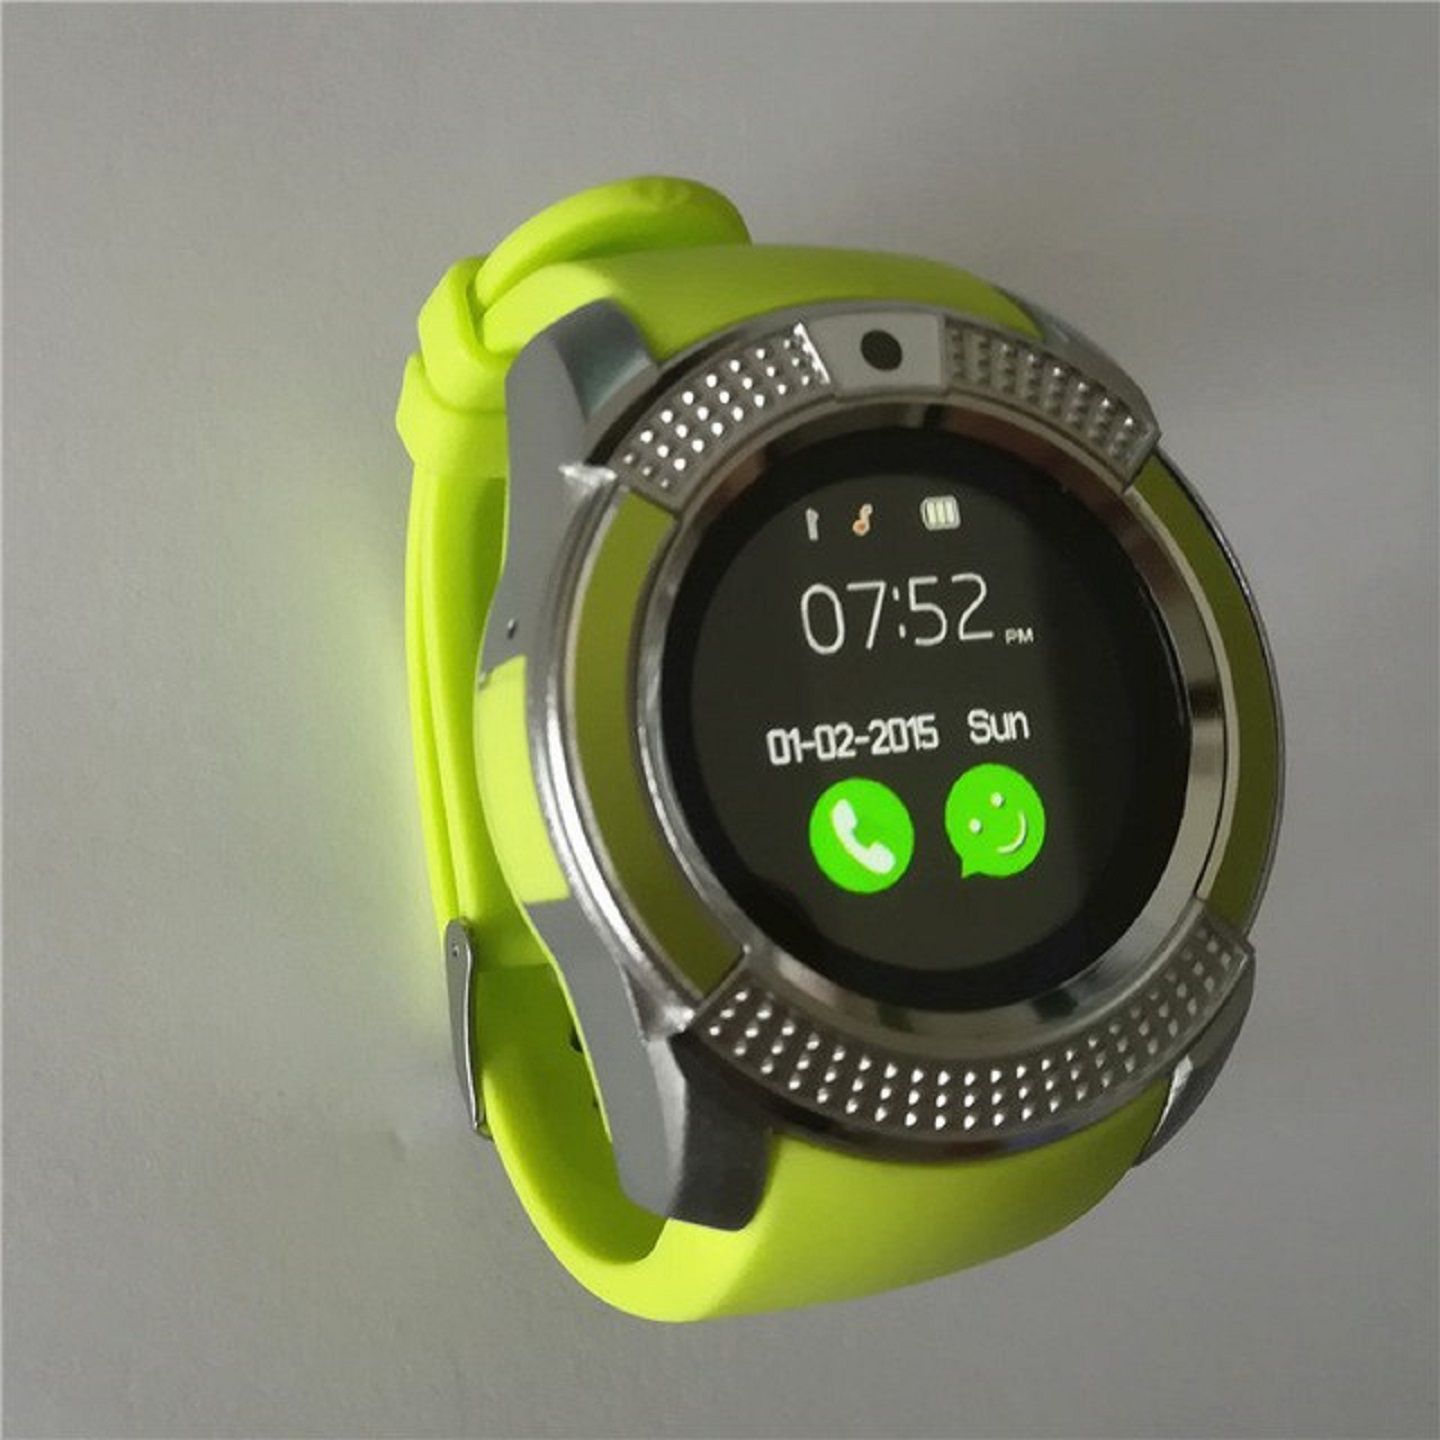 prepaid smartwatch